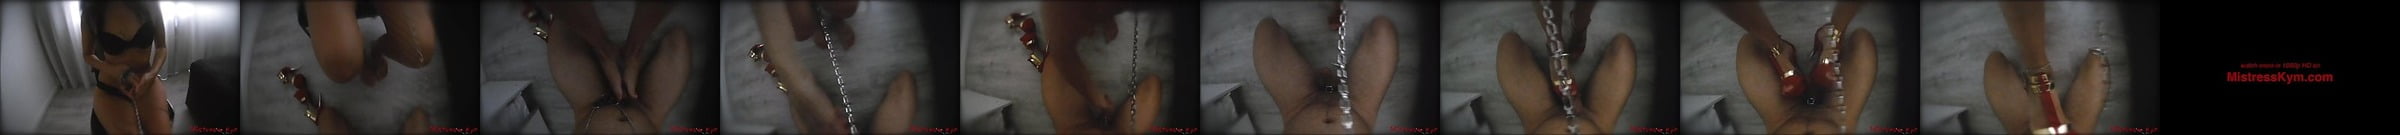 Footjob Or Torture Ujizz Tube Porn Video 52 Xhamster